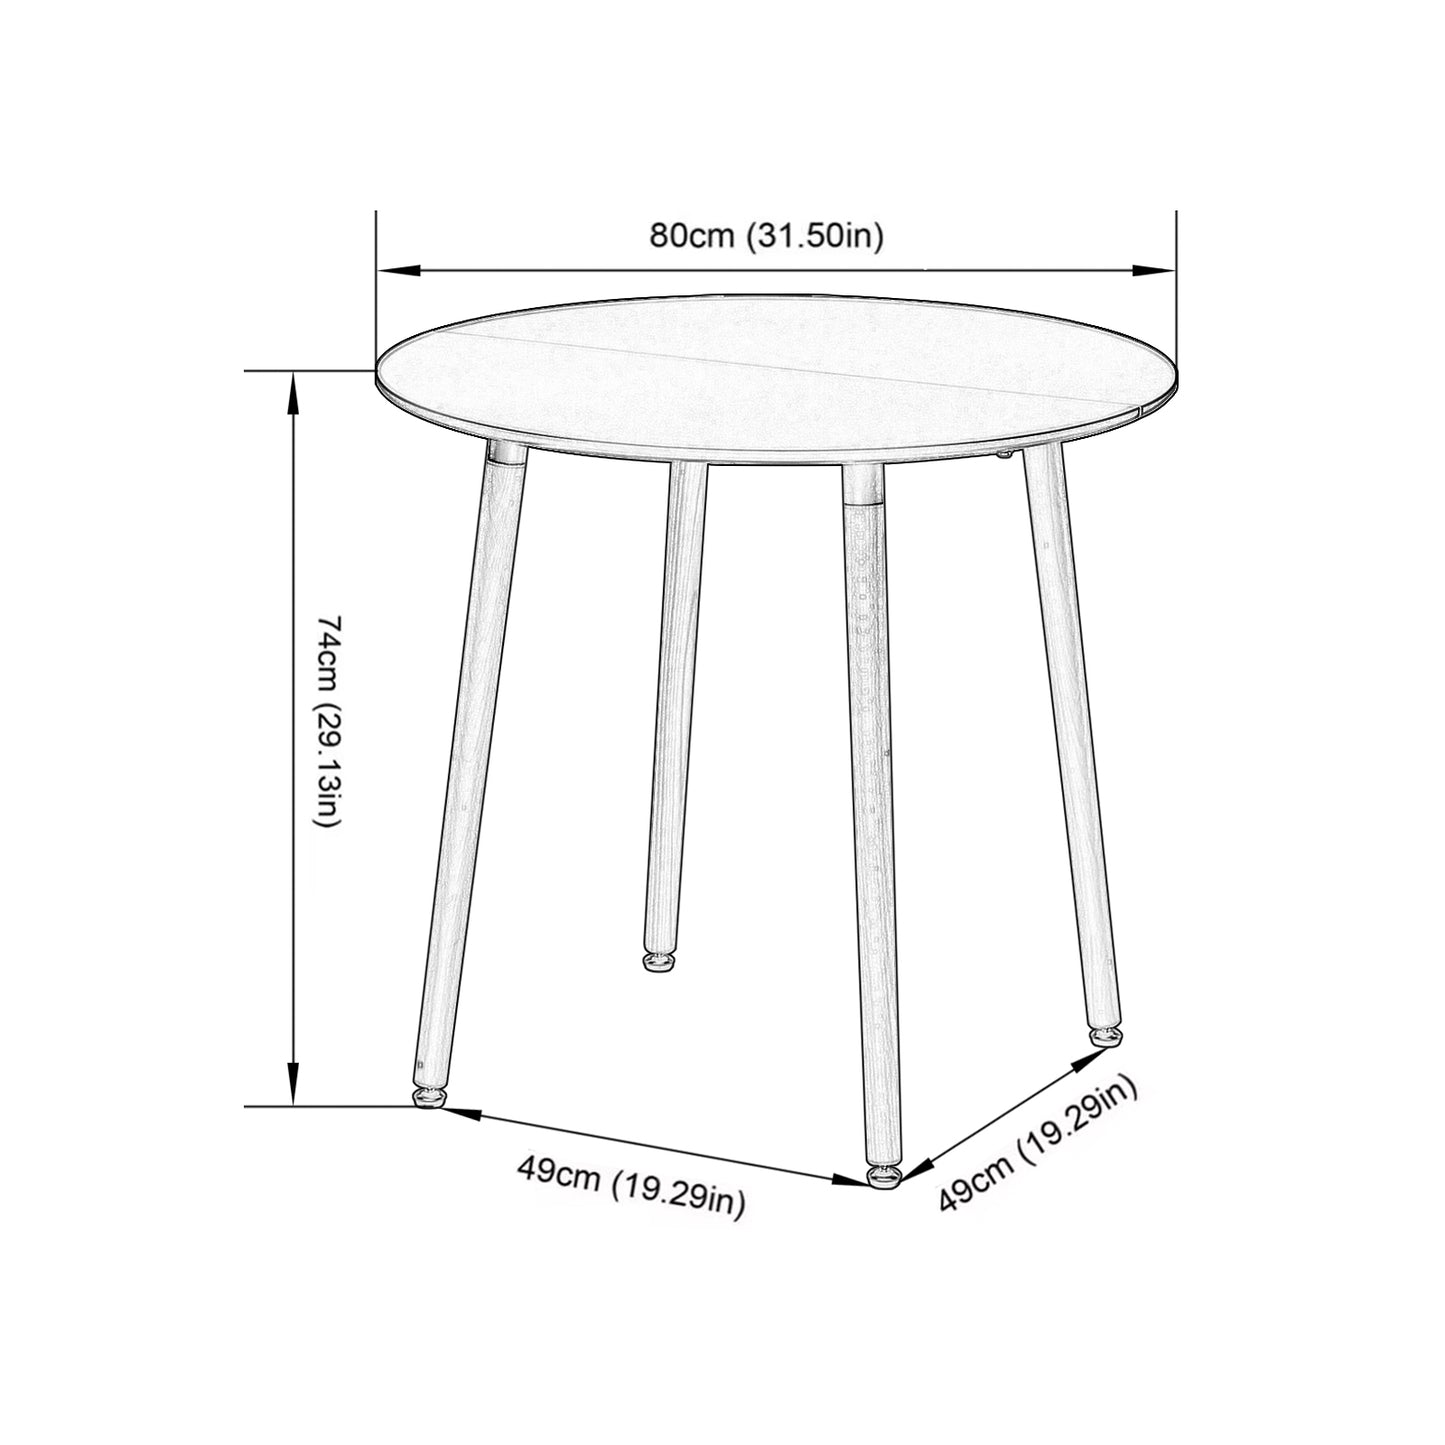 Table à manger, Table de cuisine ronde, Vert clair, Style industriel